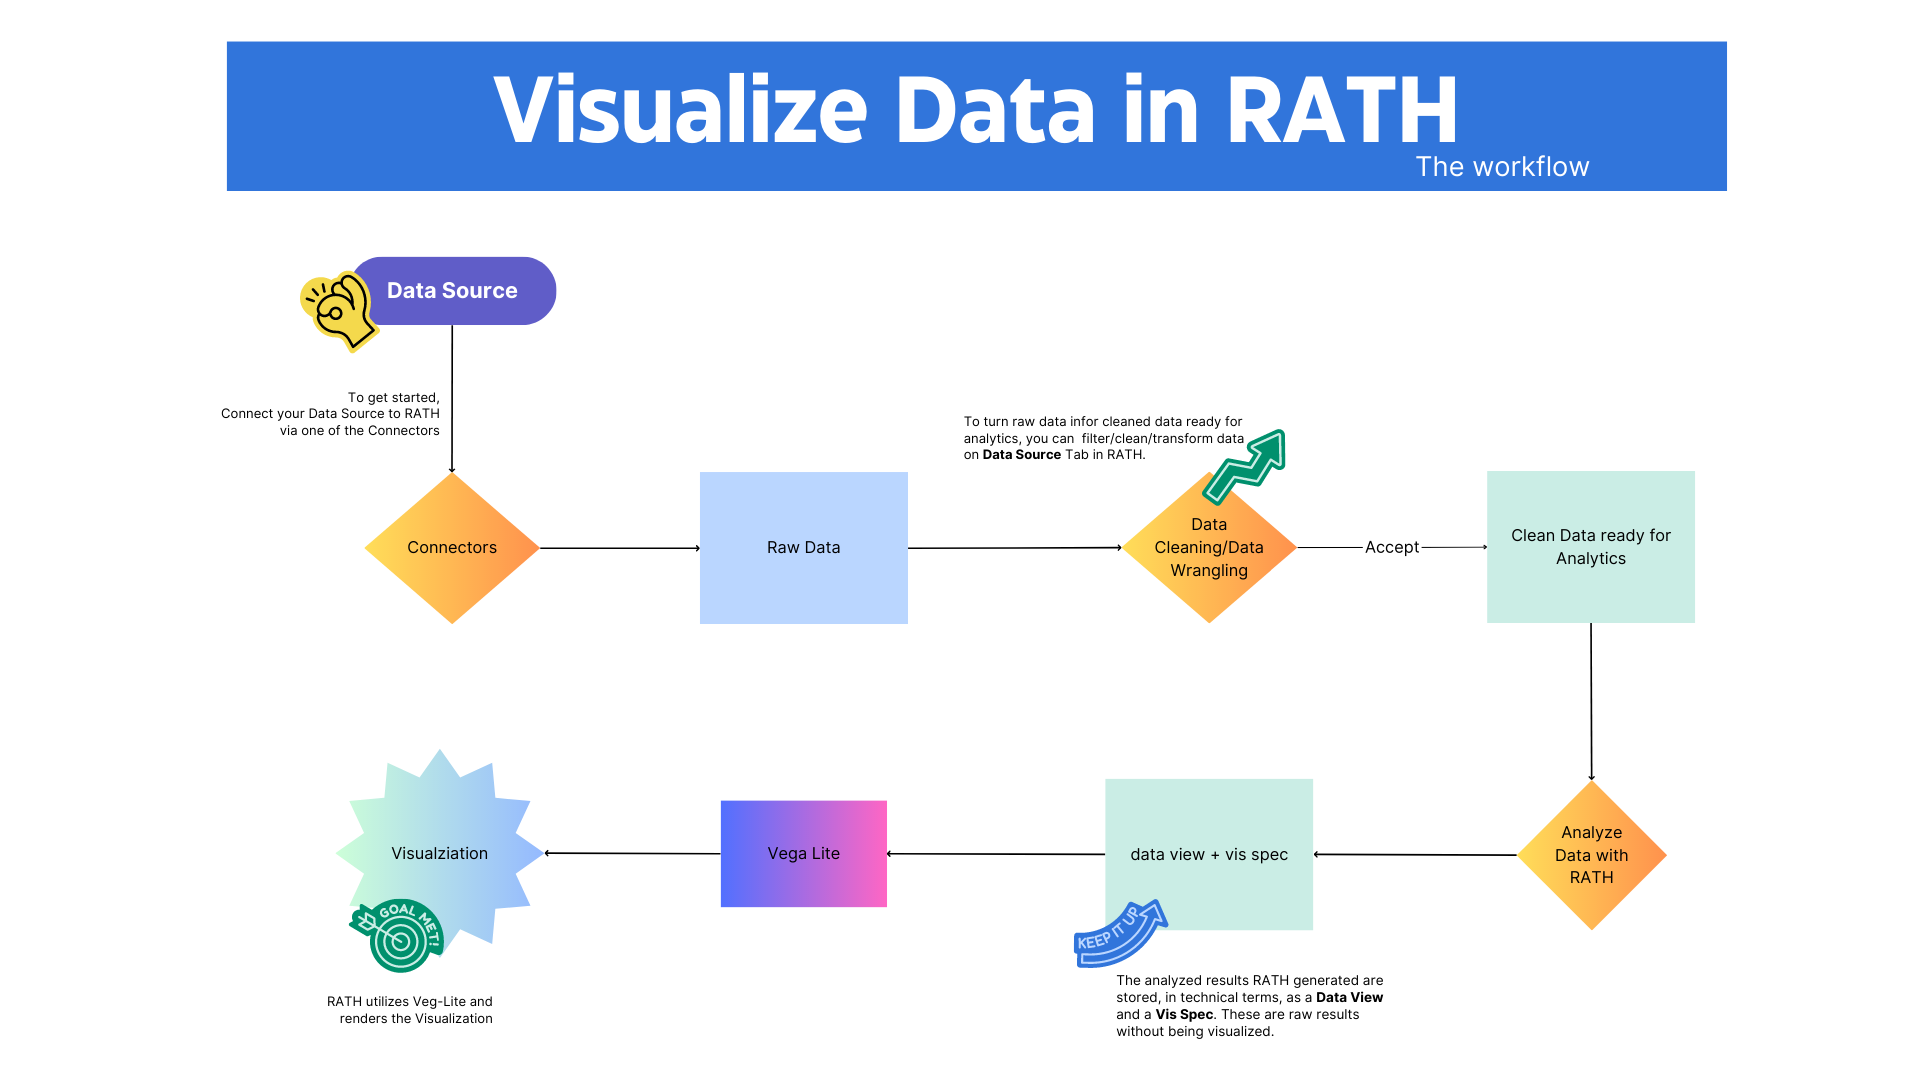 Processo para Visualizar Dados com RATH